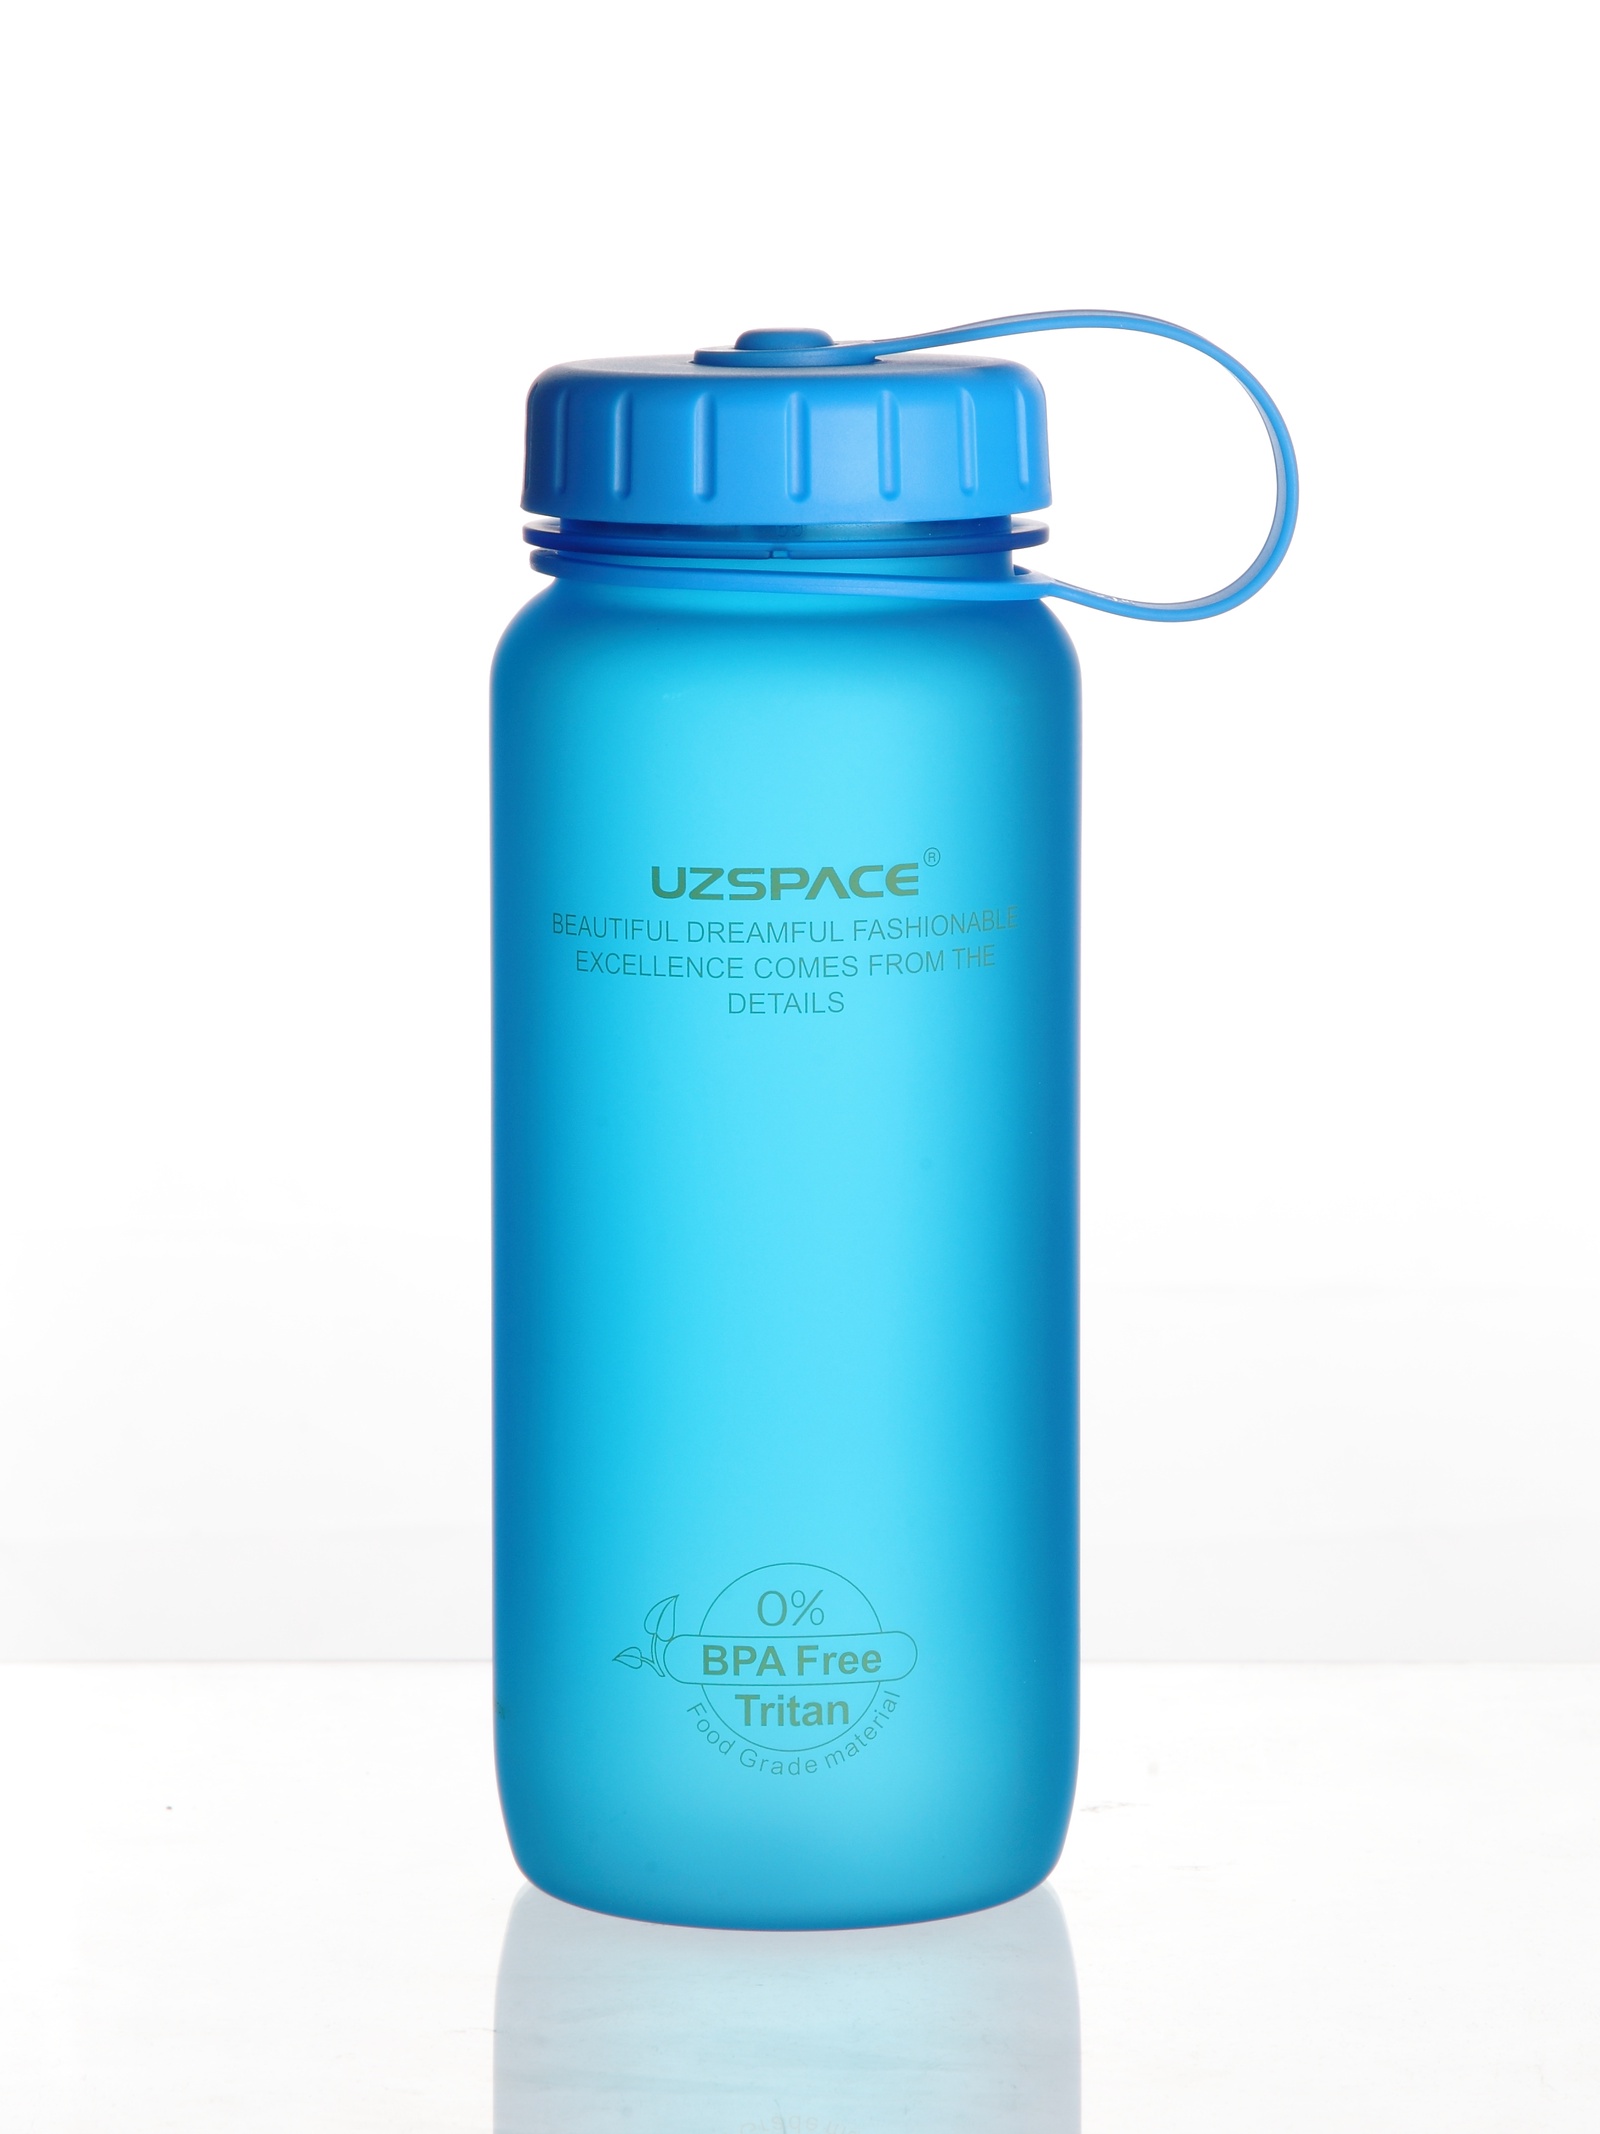 Бутылка для воды uzspace. Бутылка UZSPACE colorful Frosted 3030 0.65 л. Бутылка UZSPACE colorful Frosted 3025 0.5 л. UZSPACE бутылка для воды. Голубая бутылка питьевая.